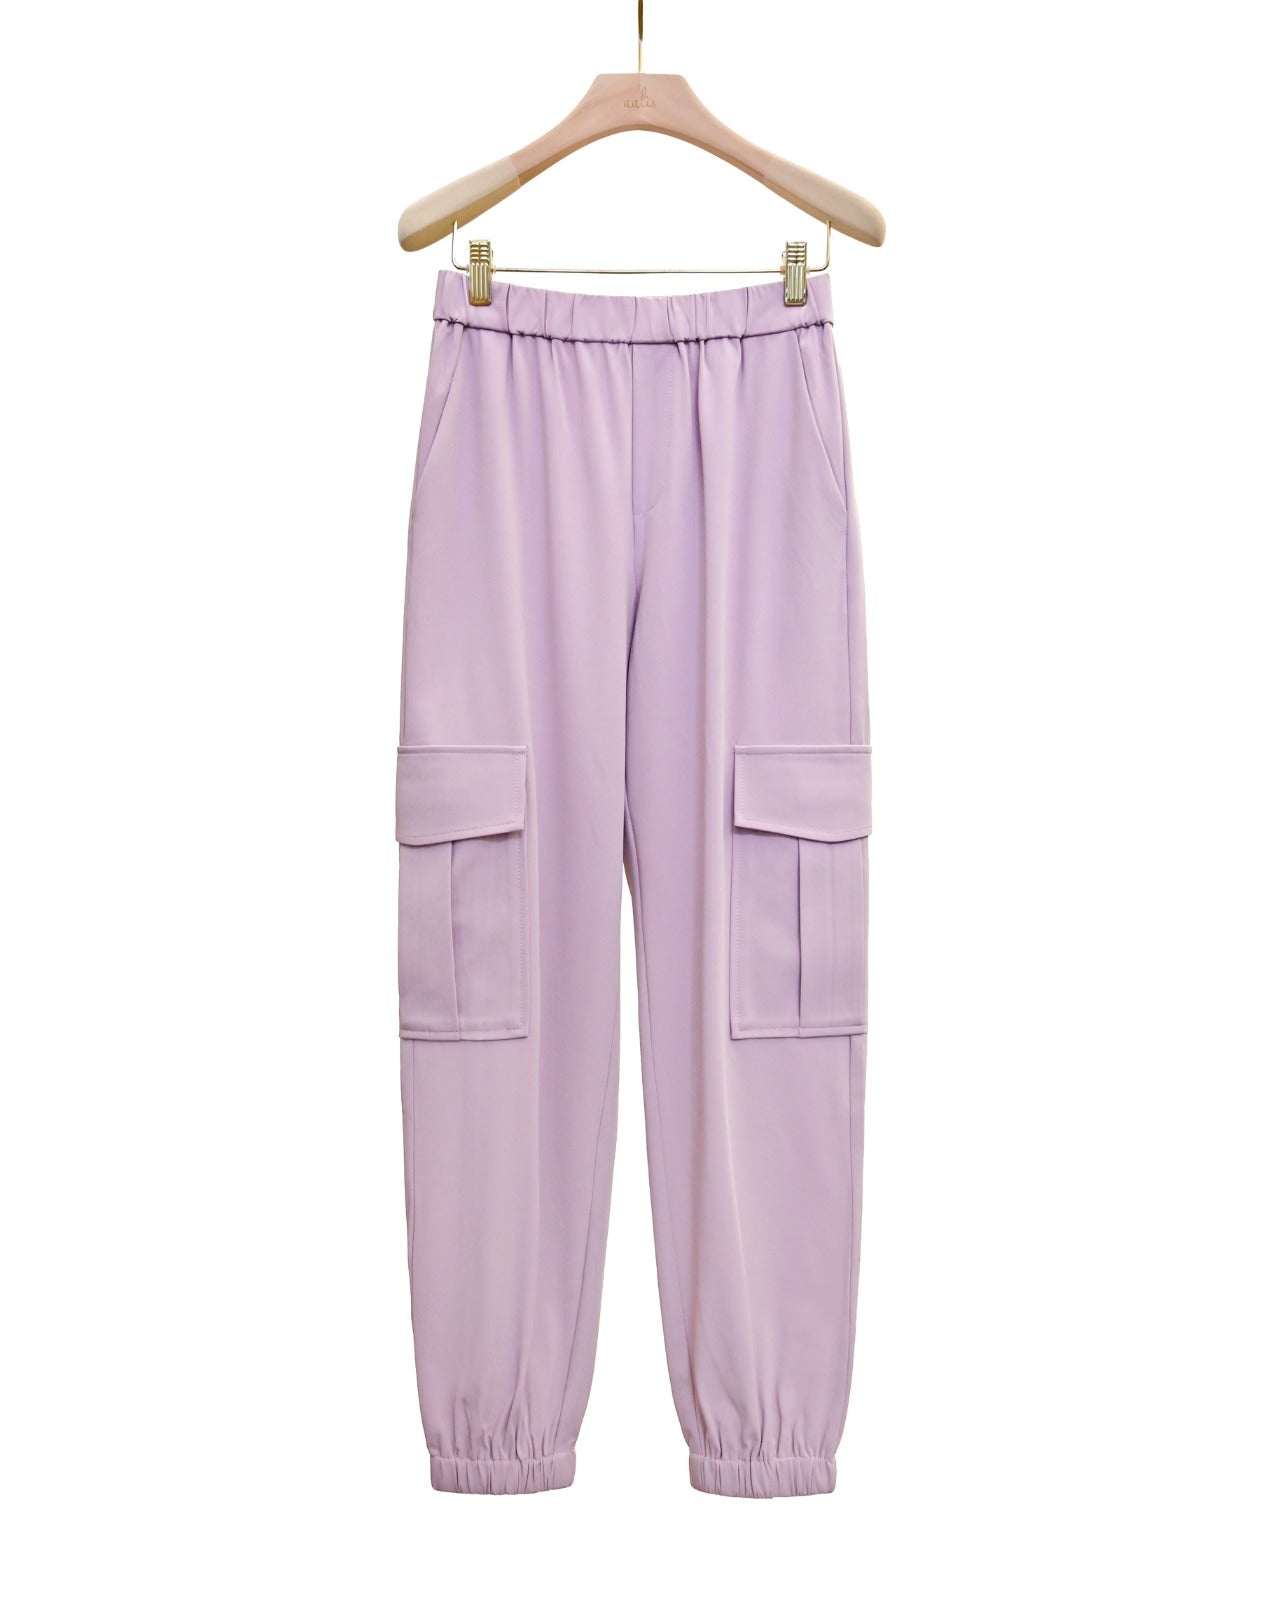 aalis FONG cargo pants (Light lilac)